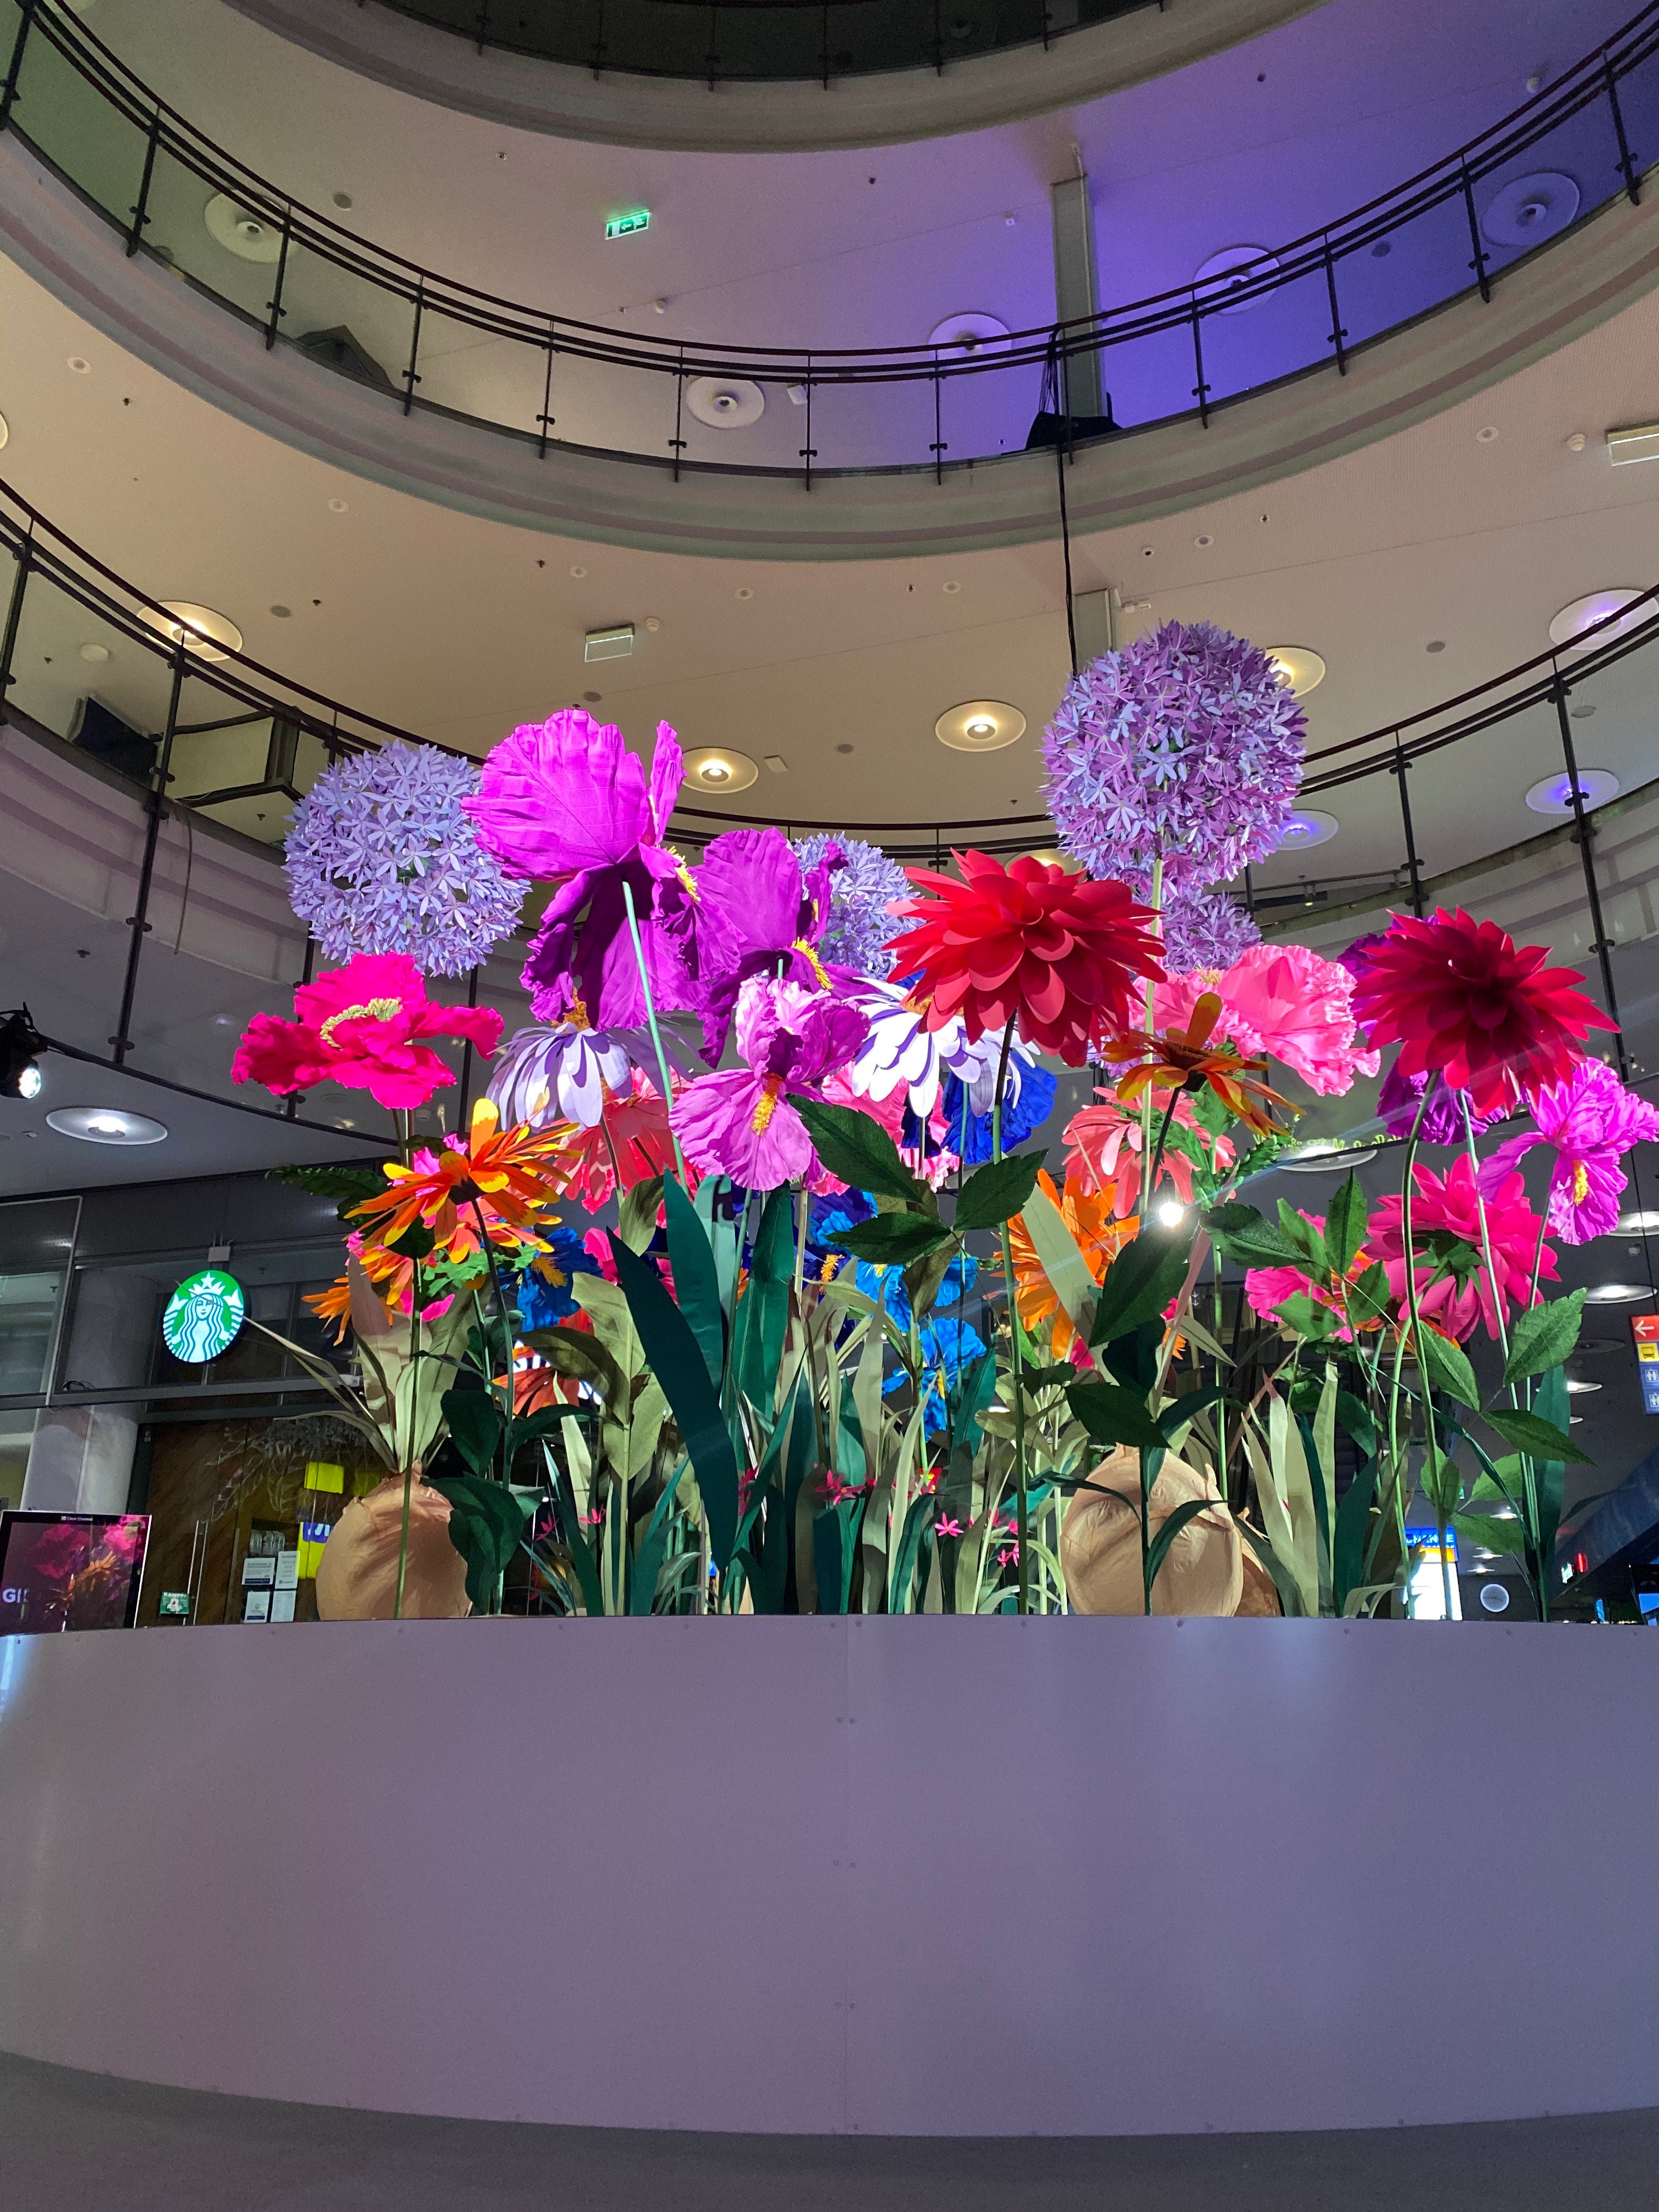 Helsinki, en Finlande, se transforme en un monde merveilleux avec de superbes fleurs en papier qui fleurissent. Les détails minutieux et les couleurs vives des fleurs en papier créent une scène pittoresque, enchantant tous ceux qui découvrent cette merveille visuelle.